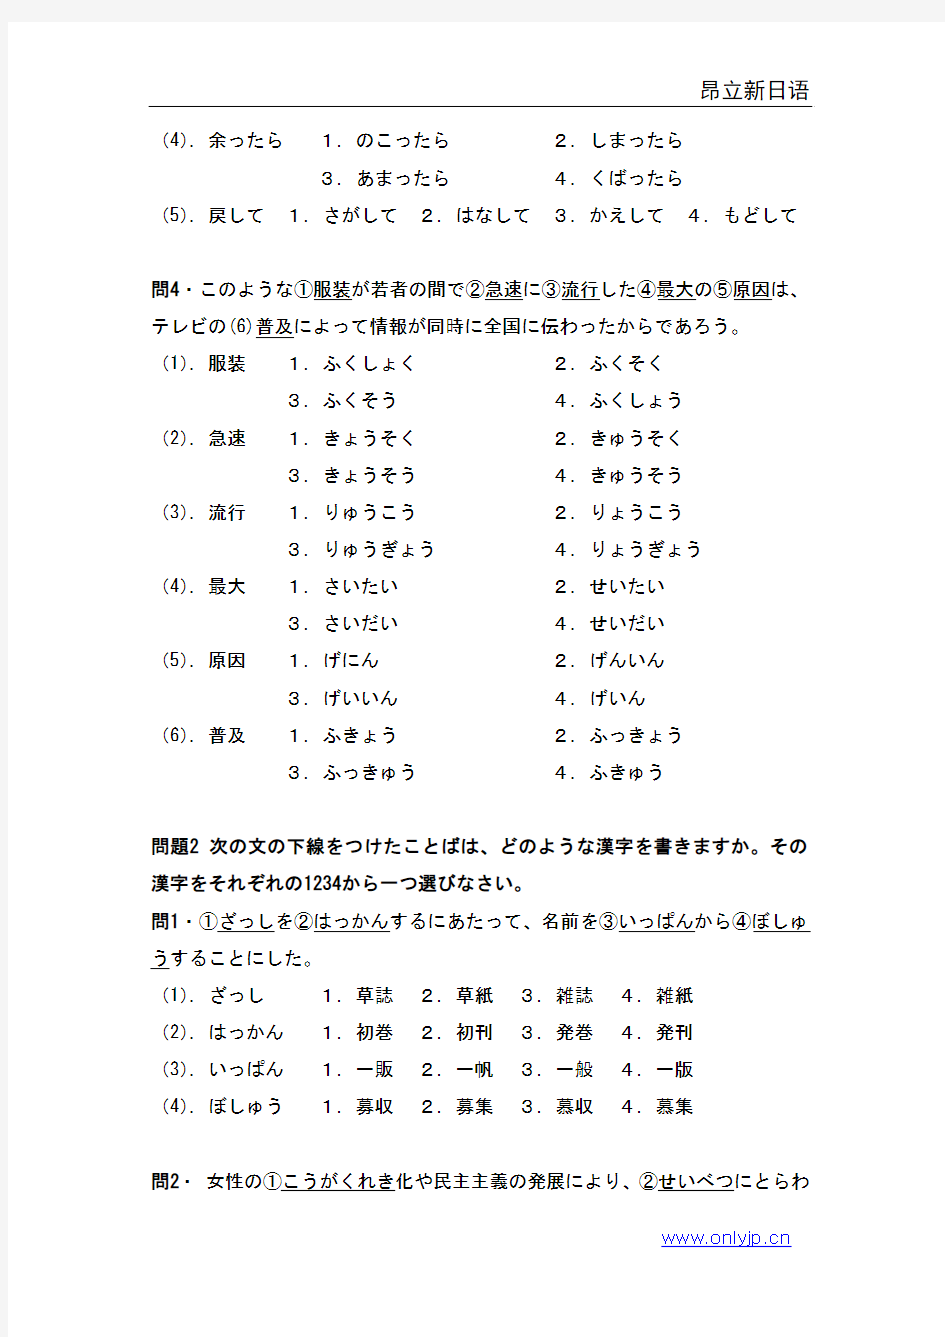 1991年日语能力考试2级真题-文字词汇